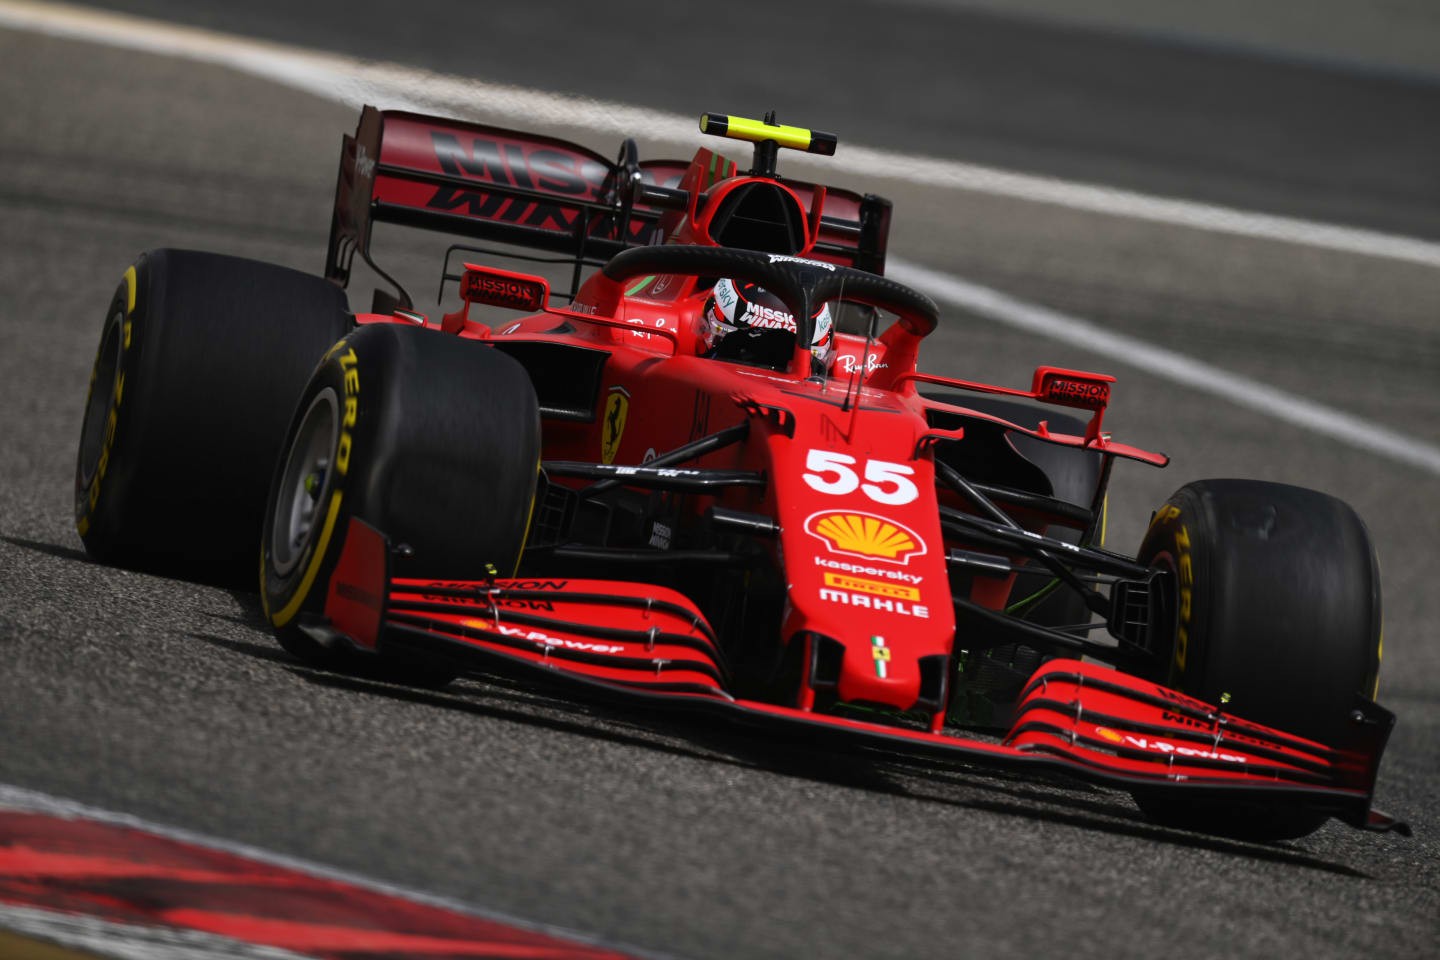 Carlos Sainz had a spin in his Ferrari